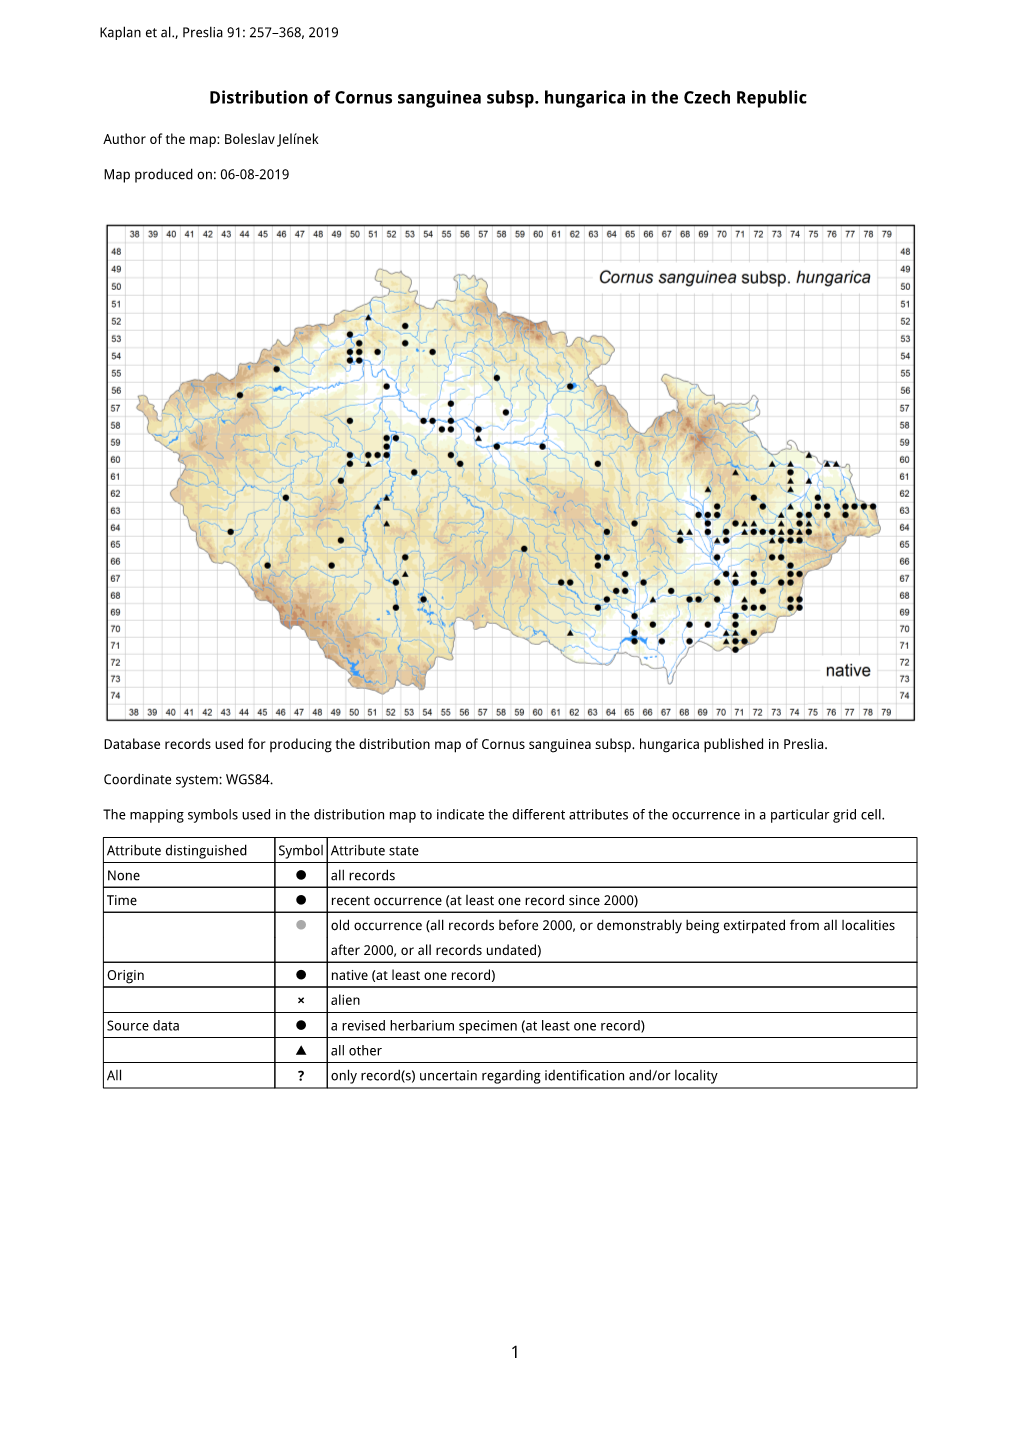 1 Distribution of Cornus Sanguinea Subsp. Hungarica in the Czech Republic